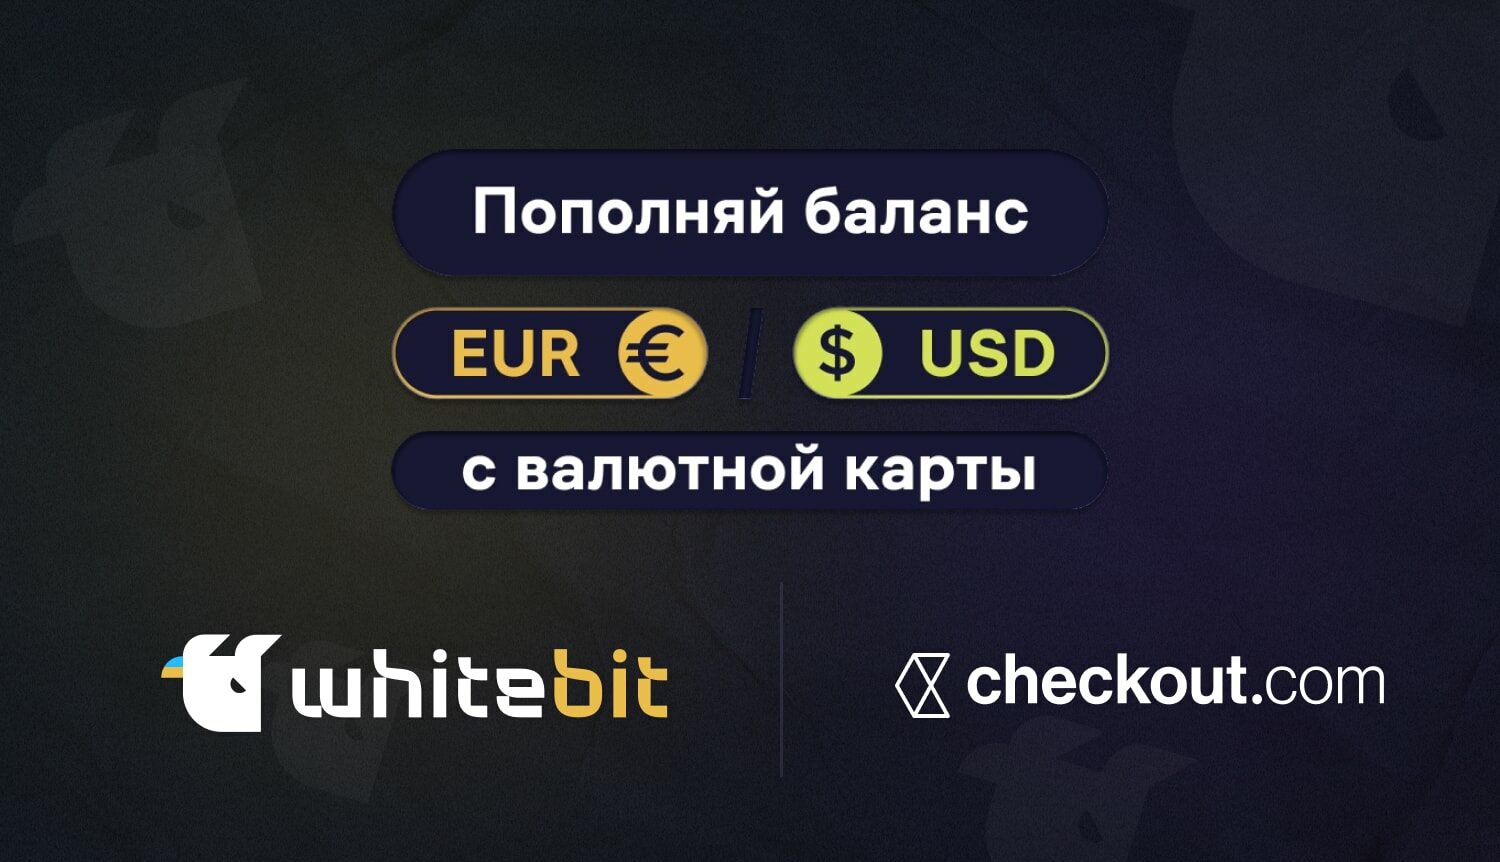 Пополнить баланс в EUR и USD на WhiteBIT стало еще проще. Заглавный коллаж новости.